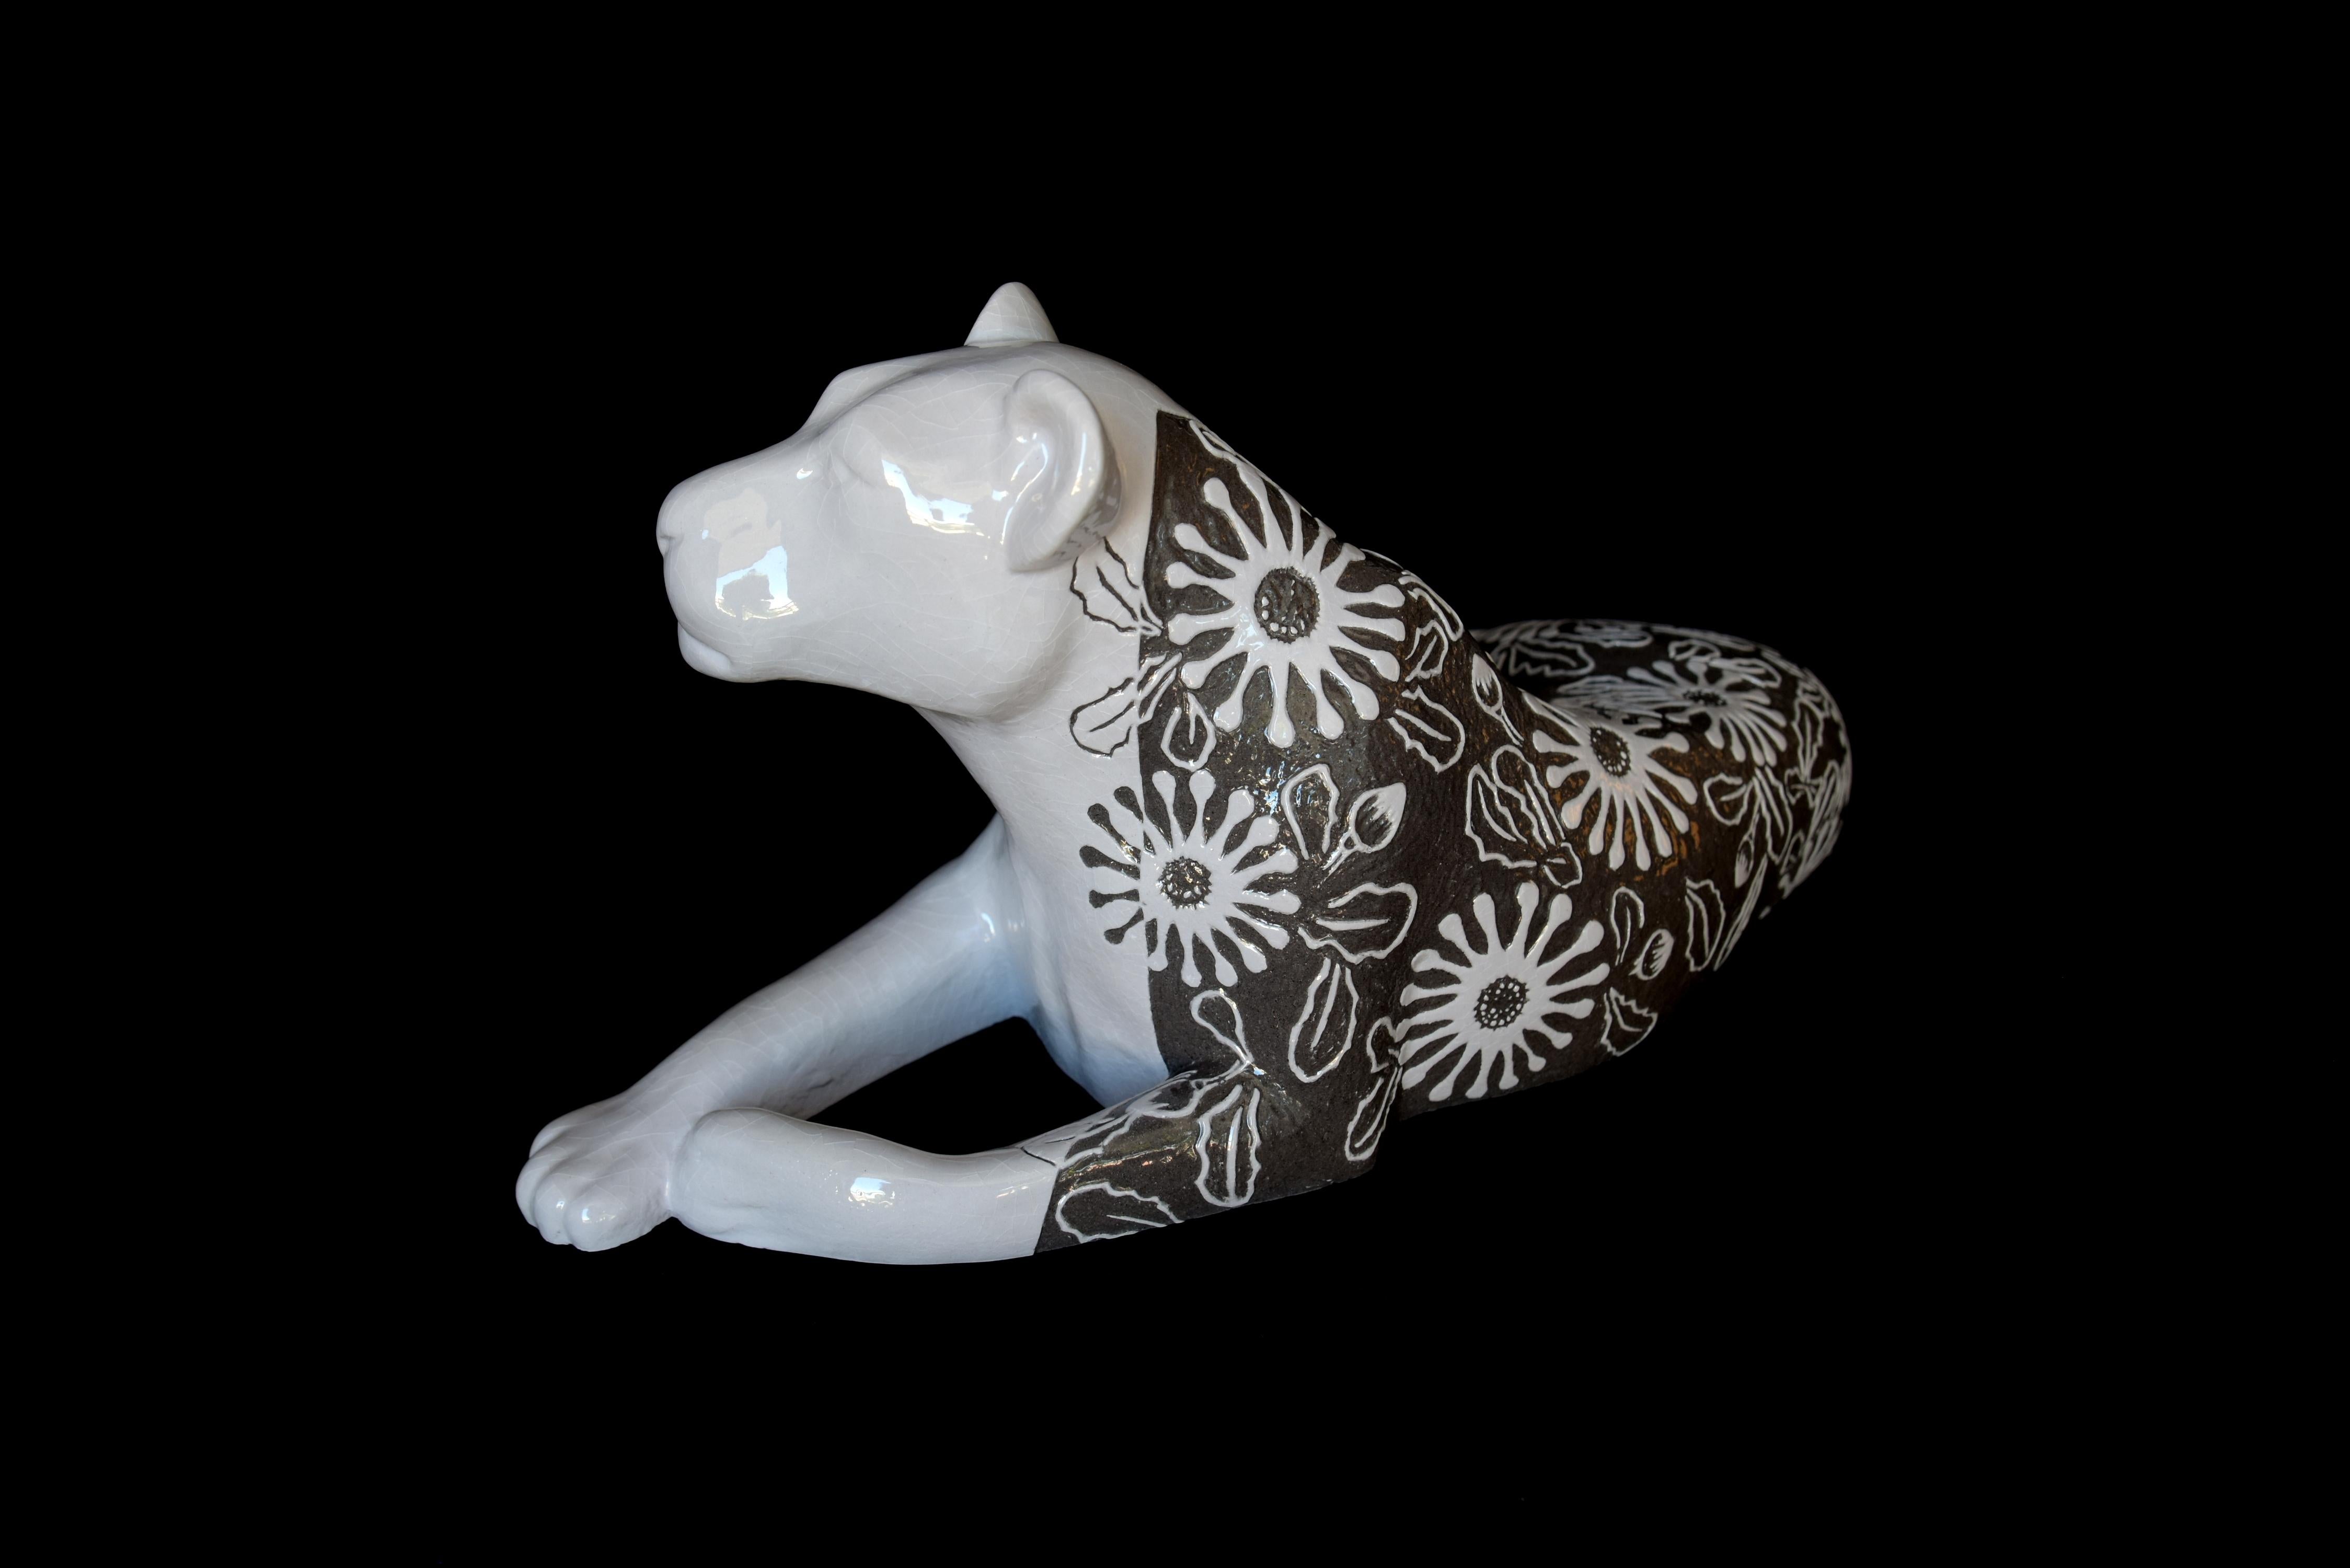 Sabina Pelc Figurative Sculpture - "Lioness - Osteospermum", unique, animal sculpture, ceramic, sgraffito technique